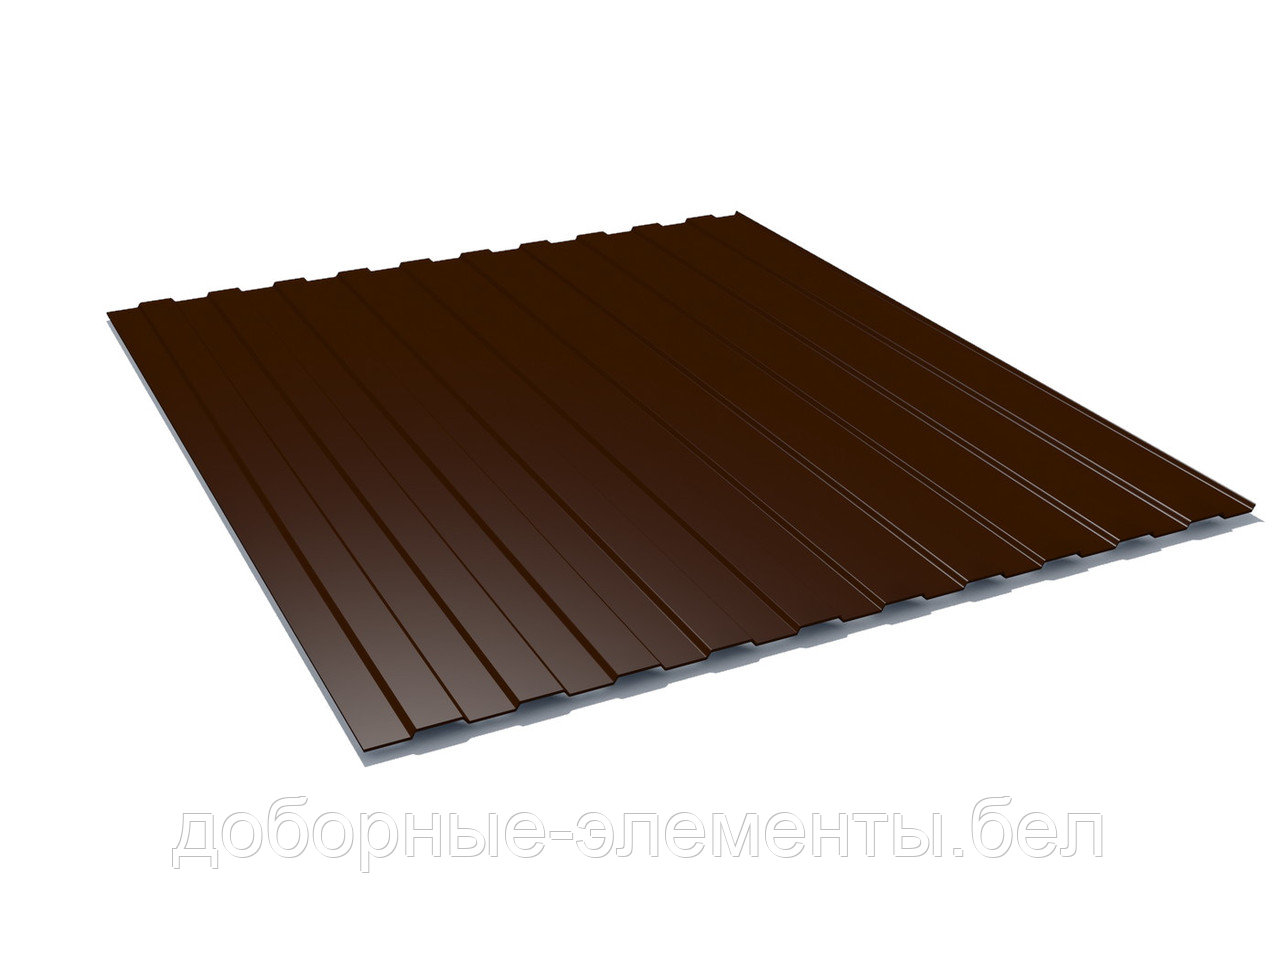 Профлист С8 для забора 1,4 м (шоколадно-коричневый), фото 1